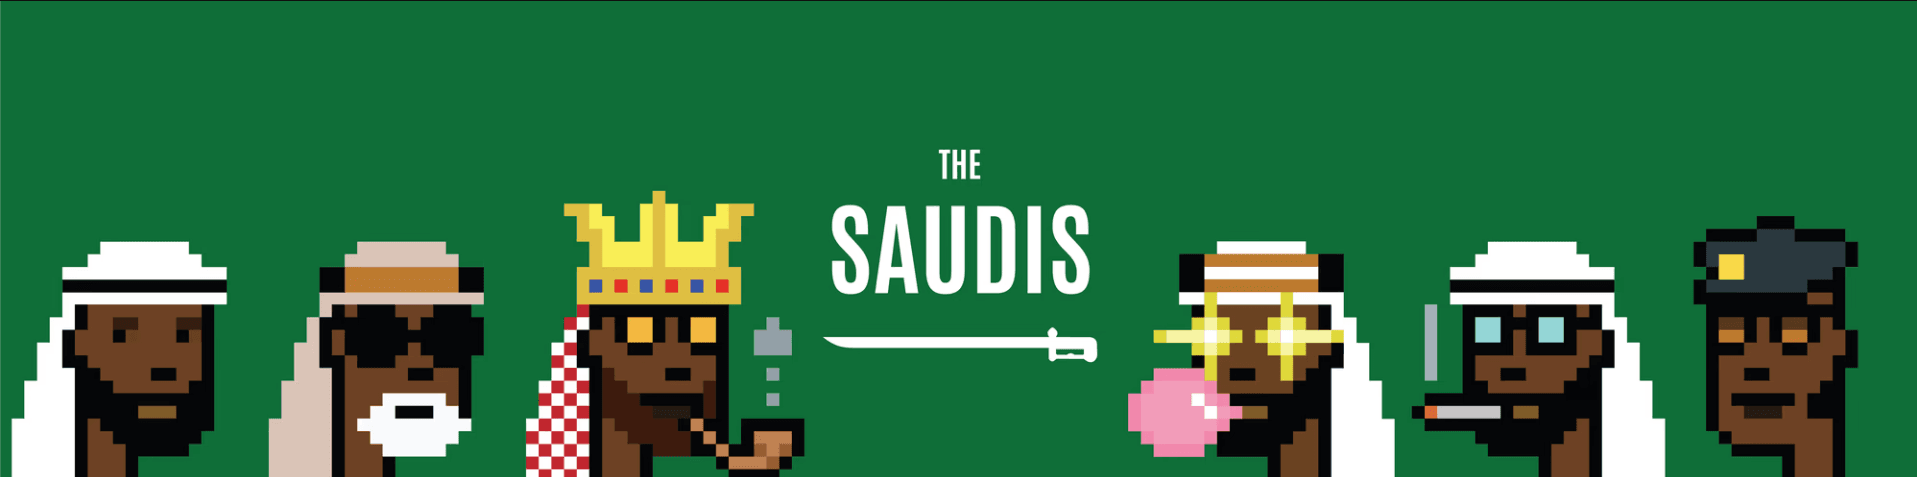 The Saudis